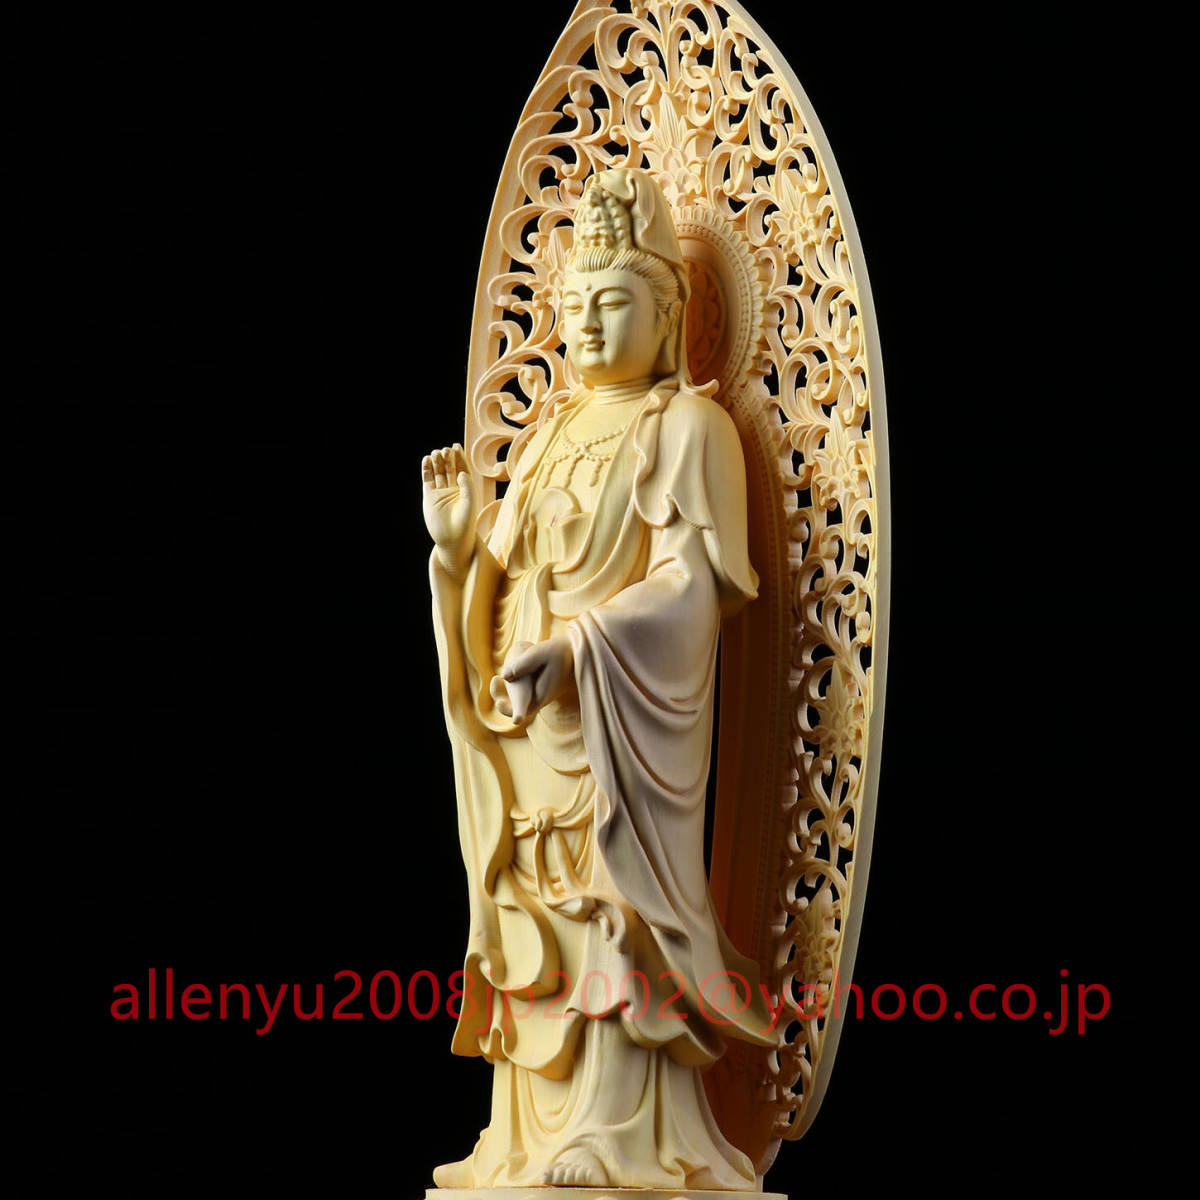 公式の 仏教木彫工芸品 観音像 招財開運 仏教美術 置物 木造木彫 